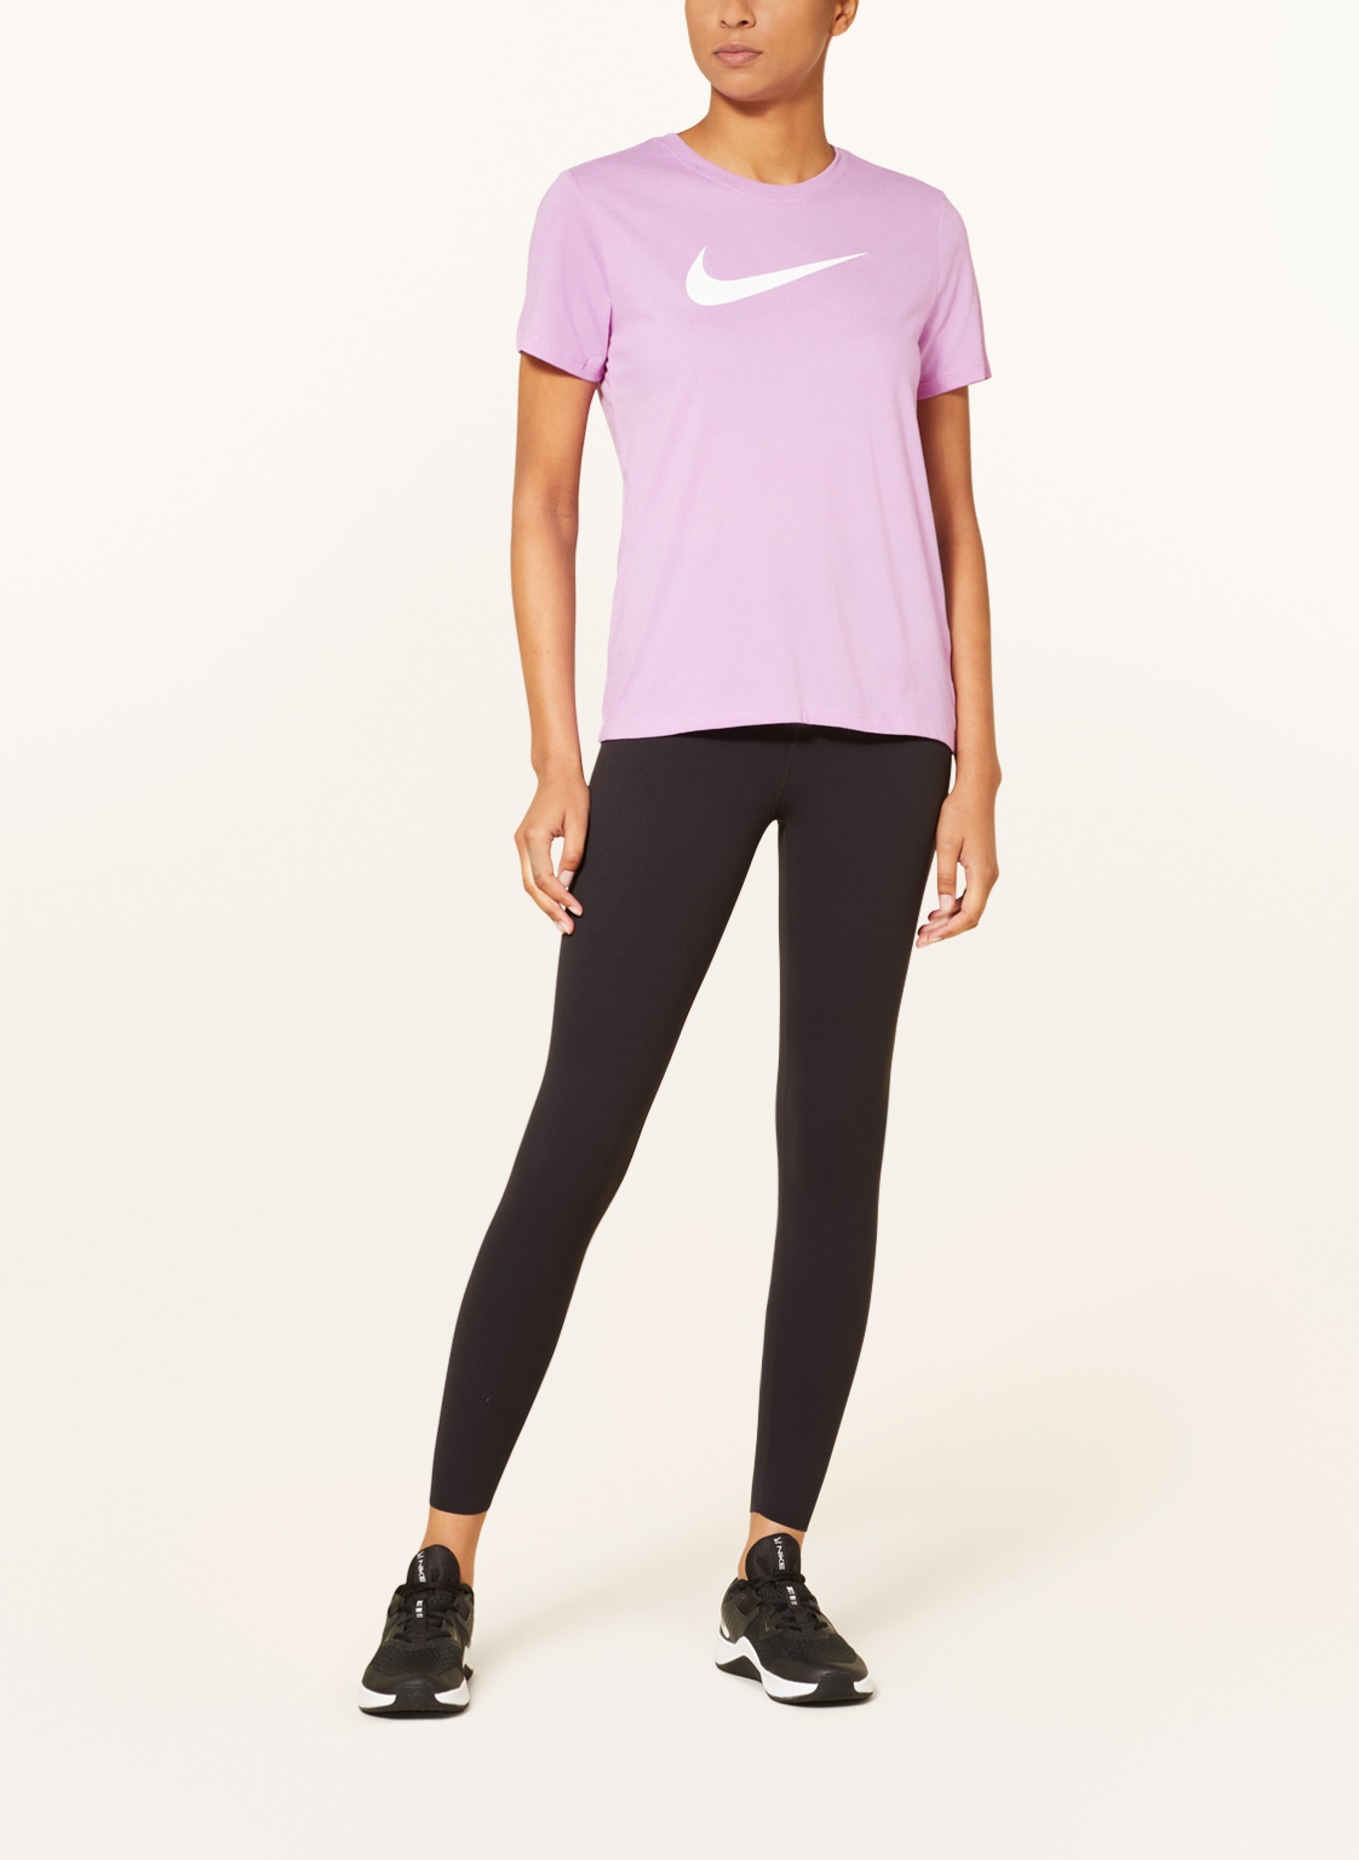 Nike T-shirt DRI-FIT SWOOSH, Color: LIGHT PURPLE (Image 2)